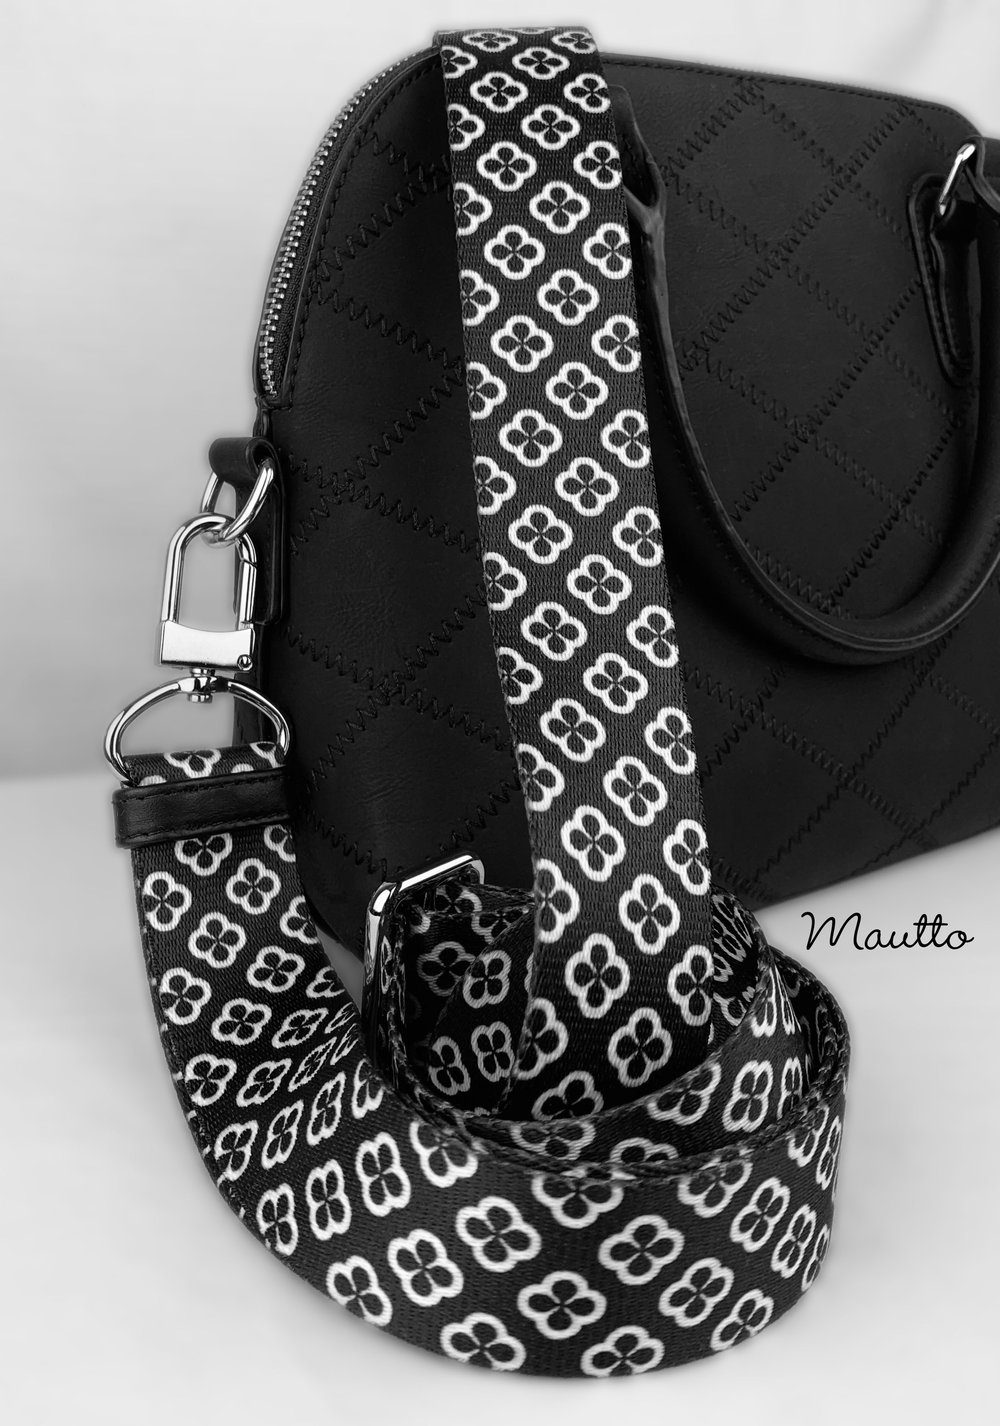 Image of Black & White Byzantine Strap - 1.5" Wide Nylon - Adjustable Length - U Shape Style #16XLG Hooks